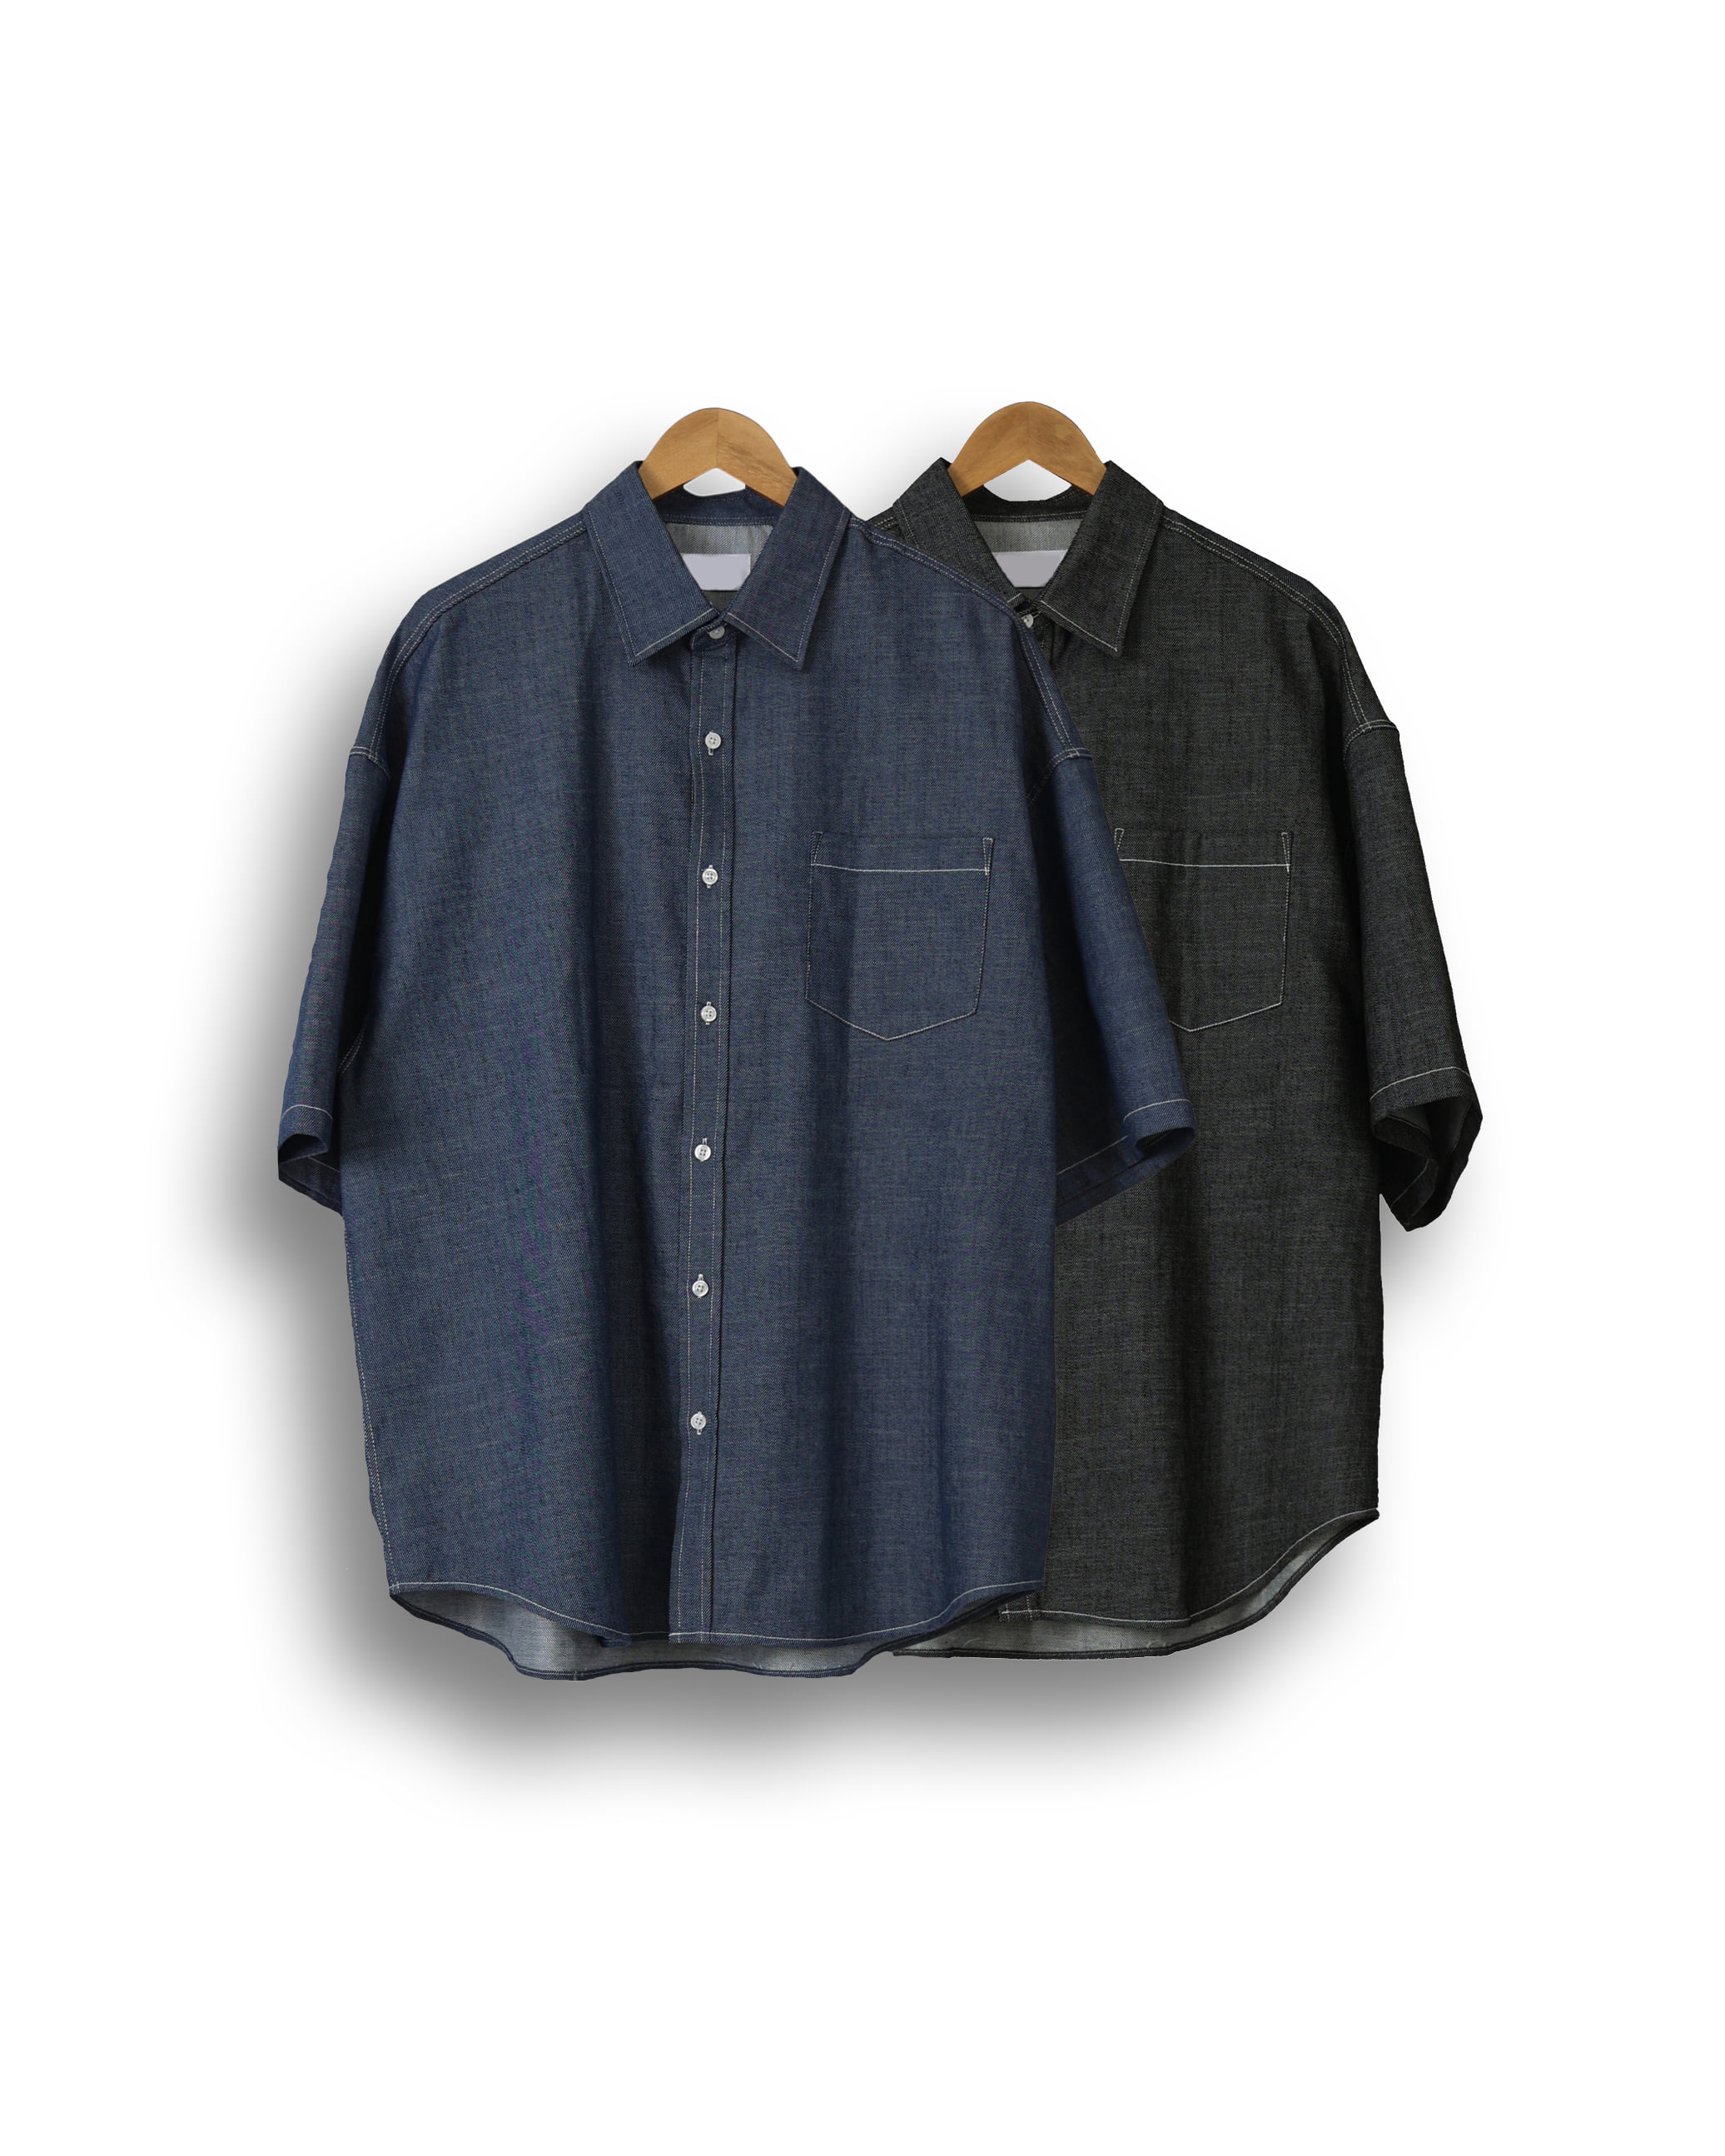 FITS 353 Cool Maxi Denim Half Shirts (Black Denim/Blue Denim)